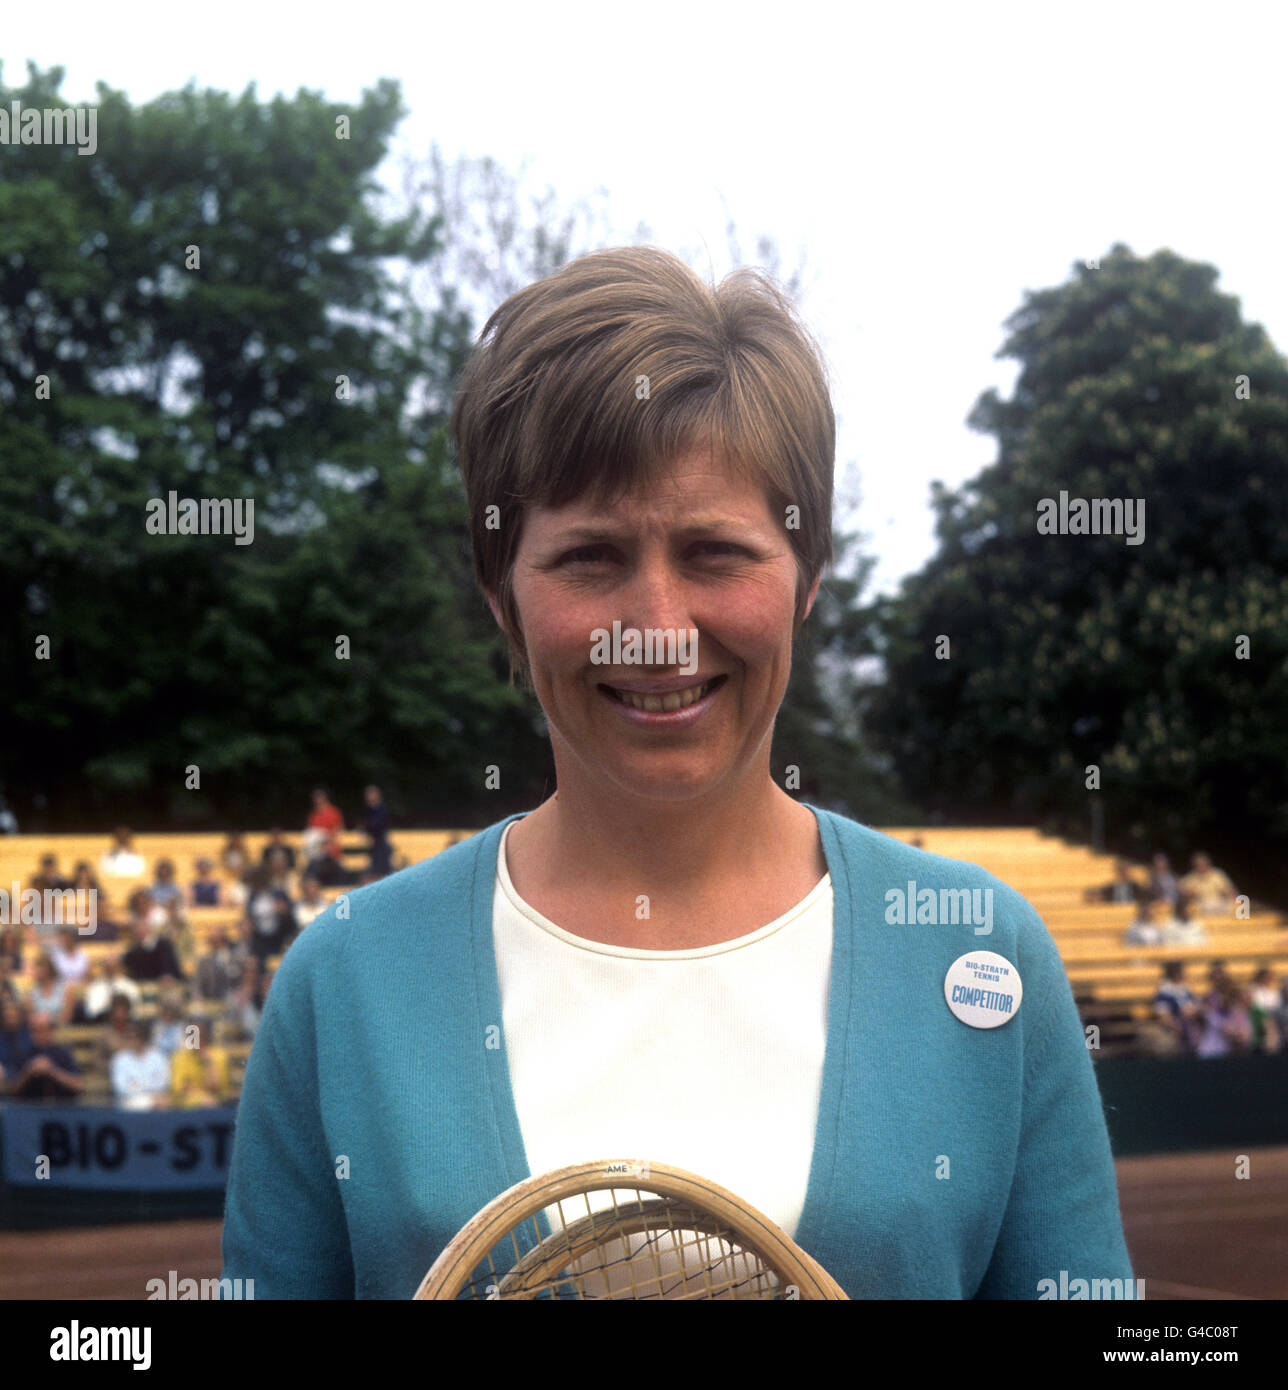 Die britische Tennisspielerin Christine Truman Janes im Hurlingham Club. Christine Truman Janes, eine der erfolgreichsten Spieler Großbritanniens, gewann 1959 die French Open und war sowohl bei Wimbledon (1961) als auch bei den US Open (1959) als Finalistin verloren. Auch als Doppelspielerin gewann sie 1960 das Australian Open Doubles und erreichte sowohl das French Open (1972) als auch das Wimbledon (1959) Finale. Nach ihrer Pensionierung im Jahr 1975 wurde sie Kommentierin für BBC Radio und erhielt 2001 einen MBE für Sportdienste. Stockfoto